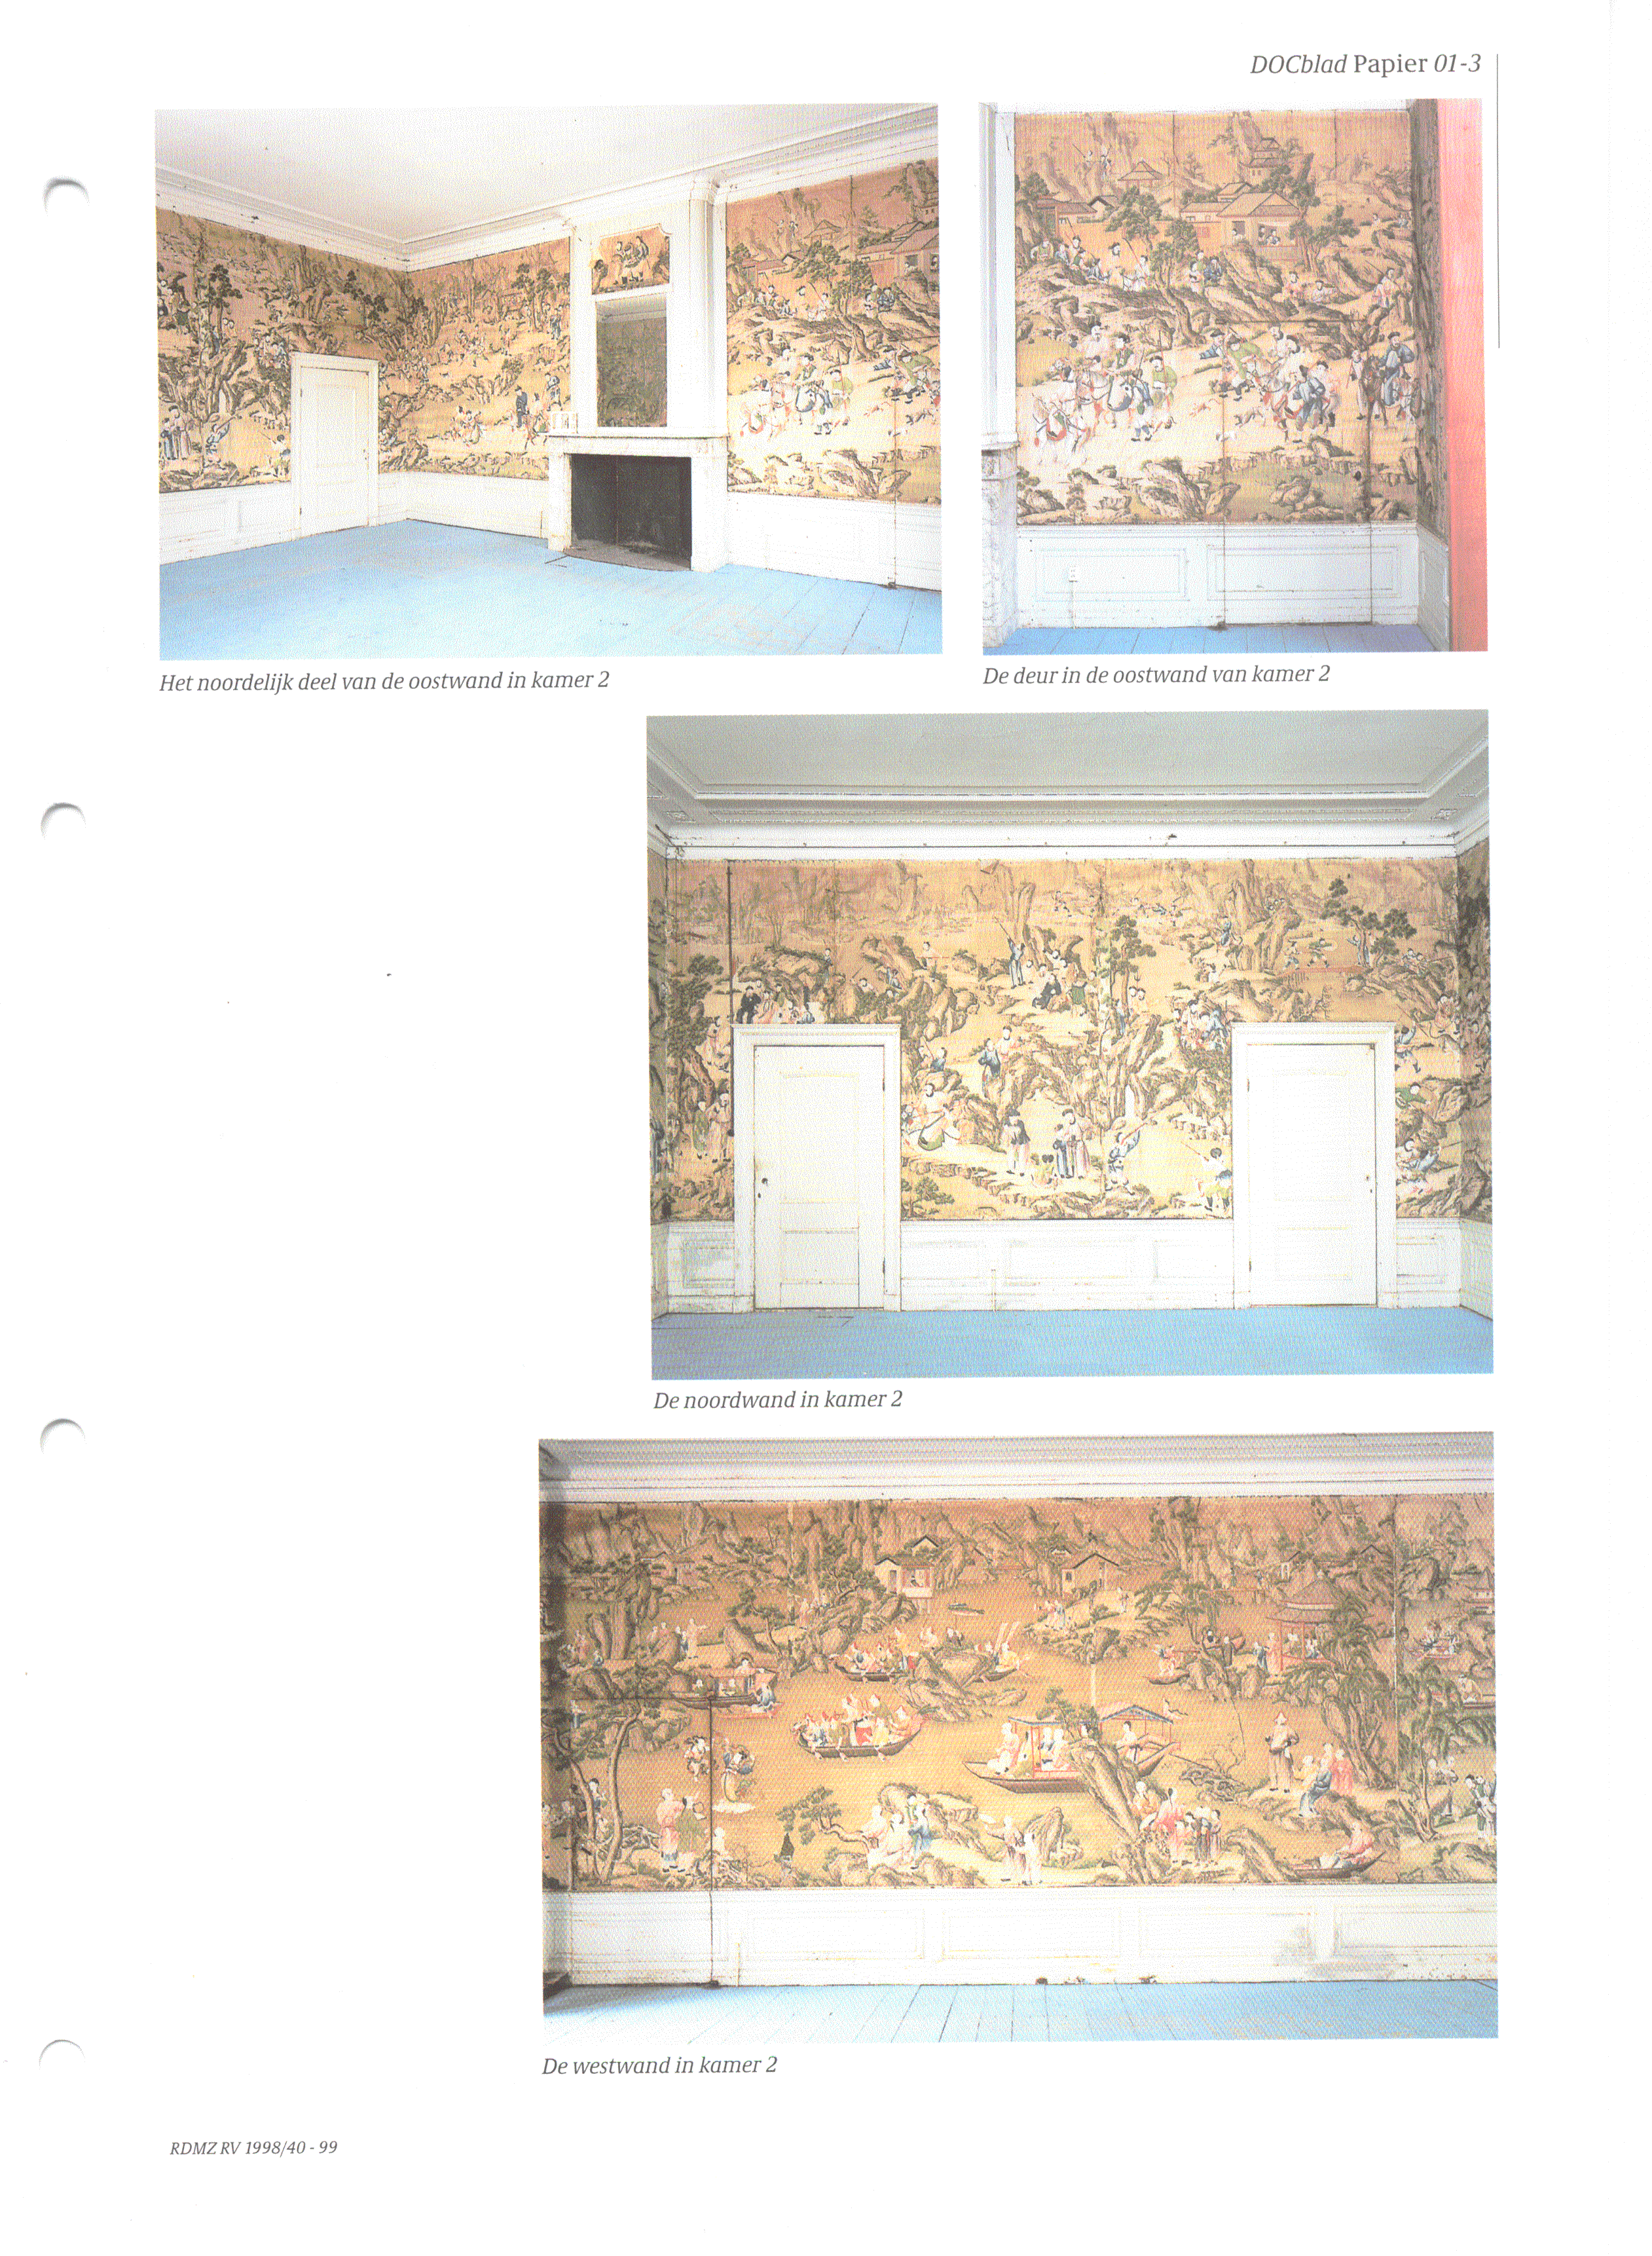 Het noordeliik deel van de oostwand in kamer 2 De deur in de oostwand van kamer 2